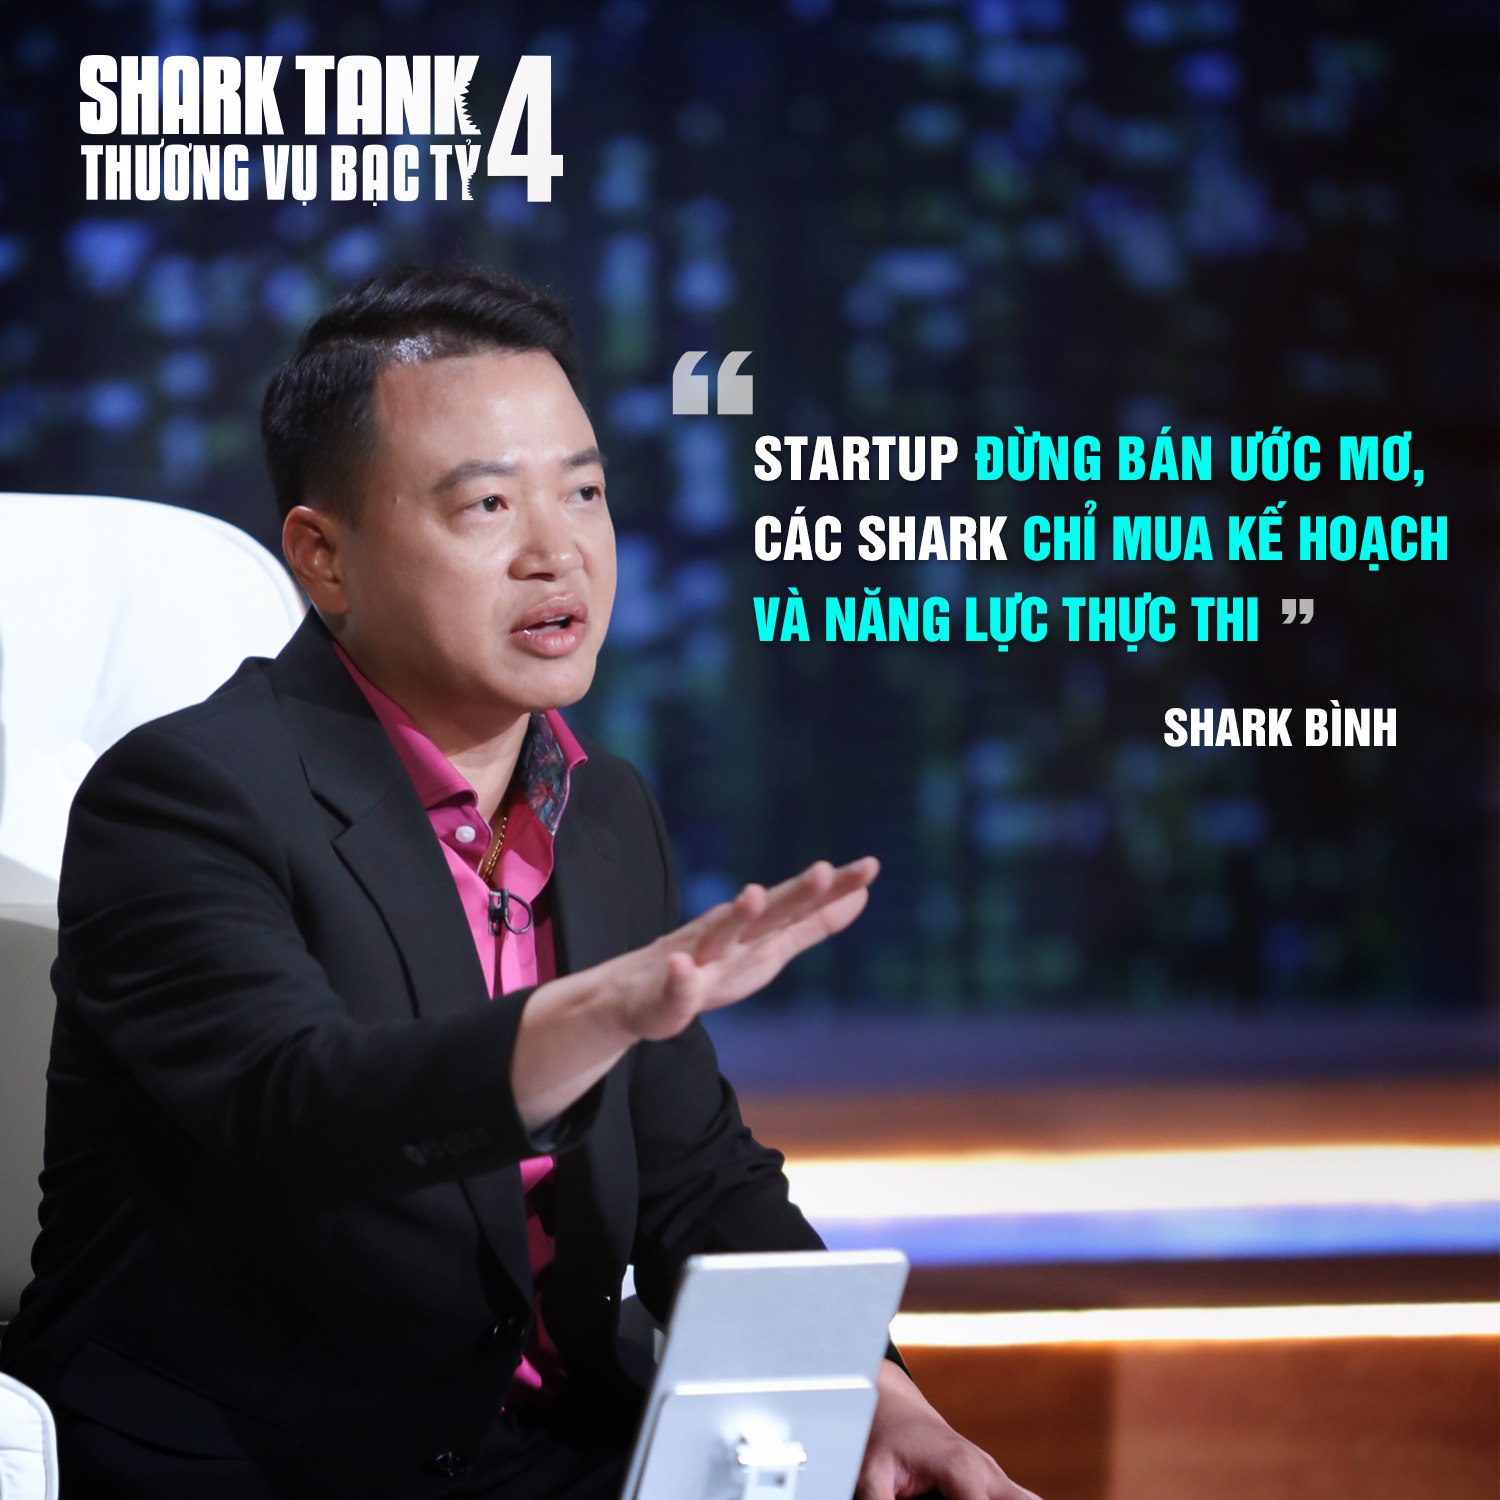 Shark Bình là ai? Tiểu sử Shark Bình Cá Mập Shark Tank 2021